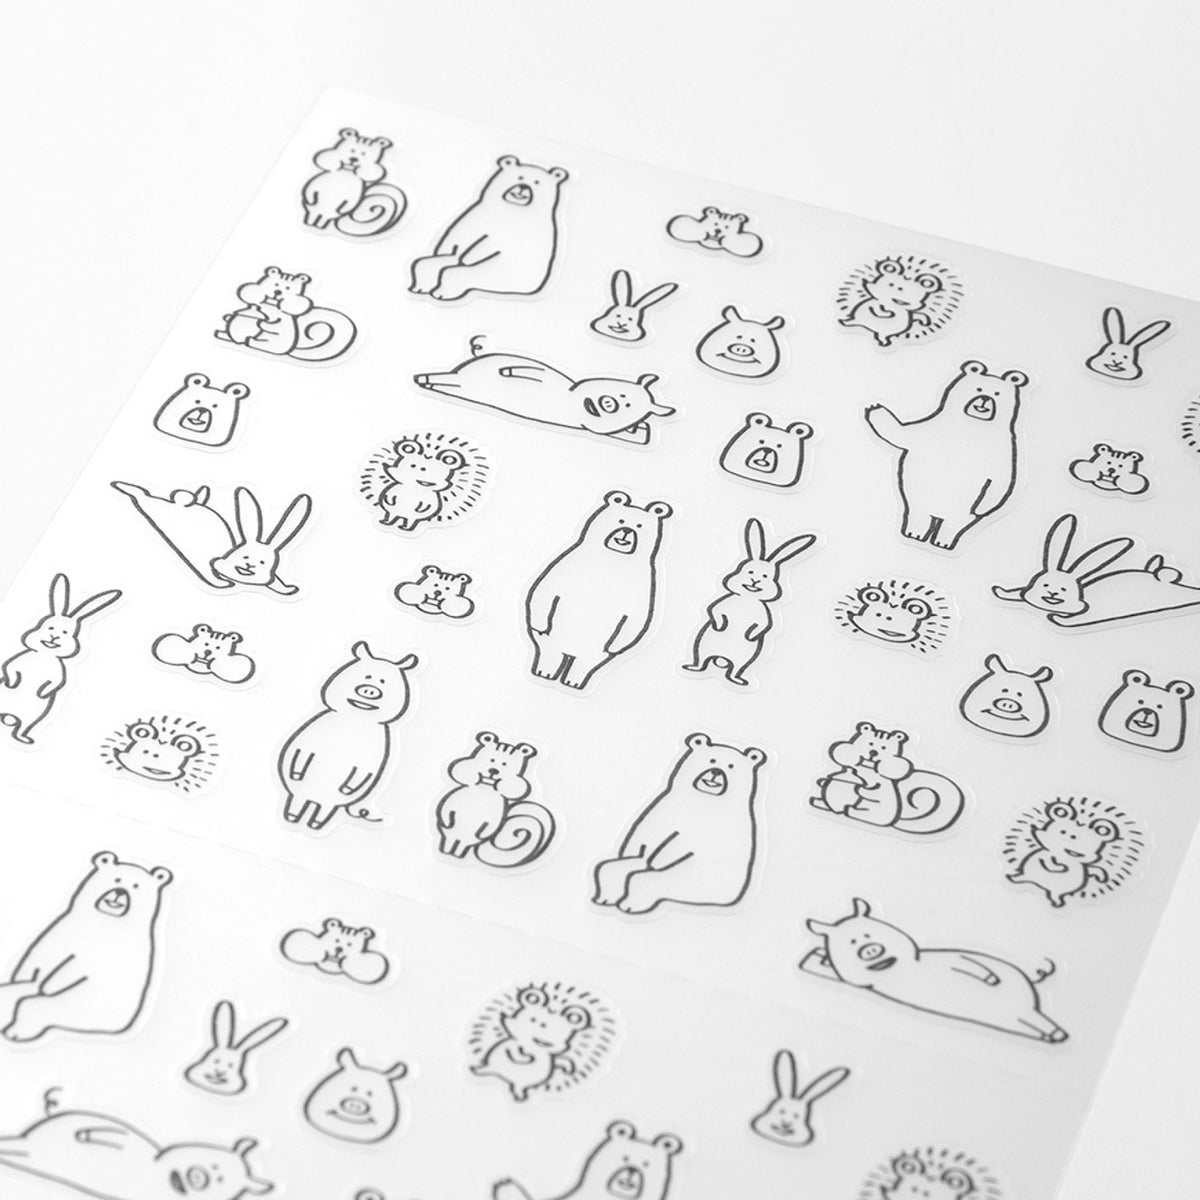 Midori - Planner Sticker - Seal Collection - Forrest Animals Sketch